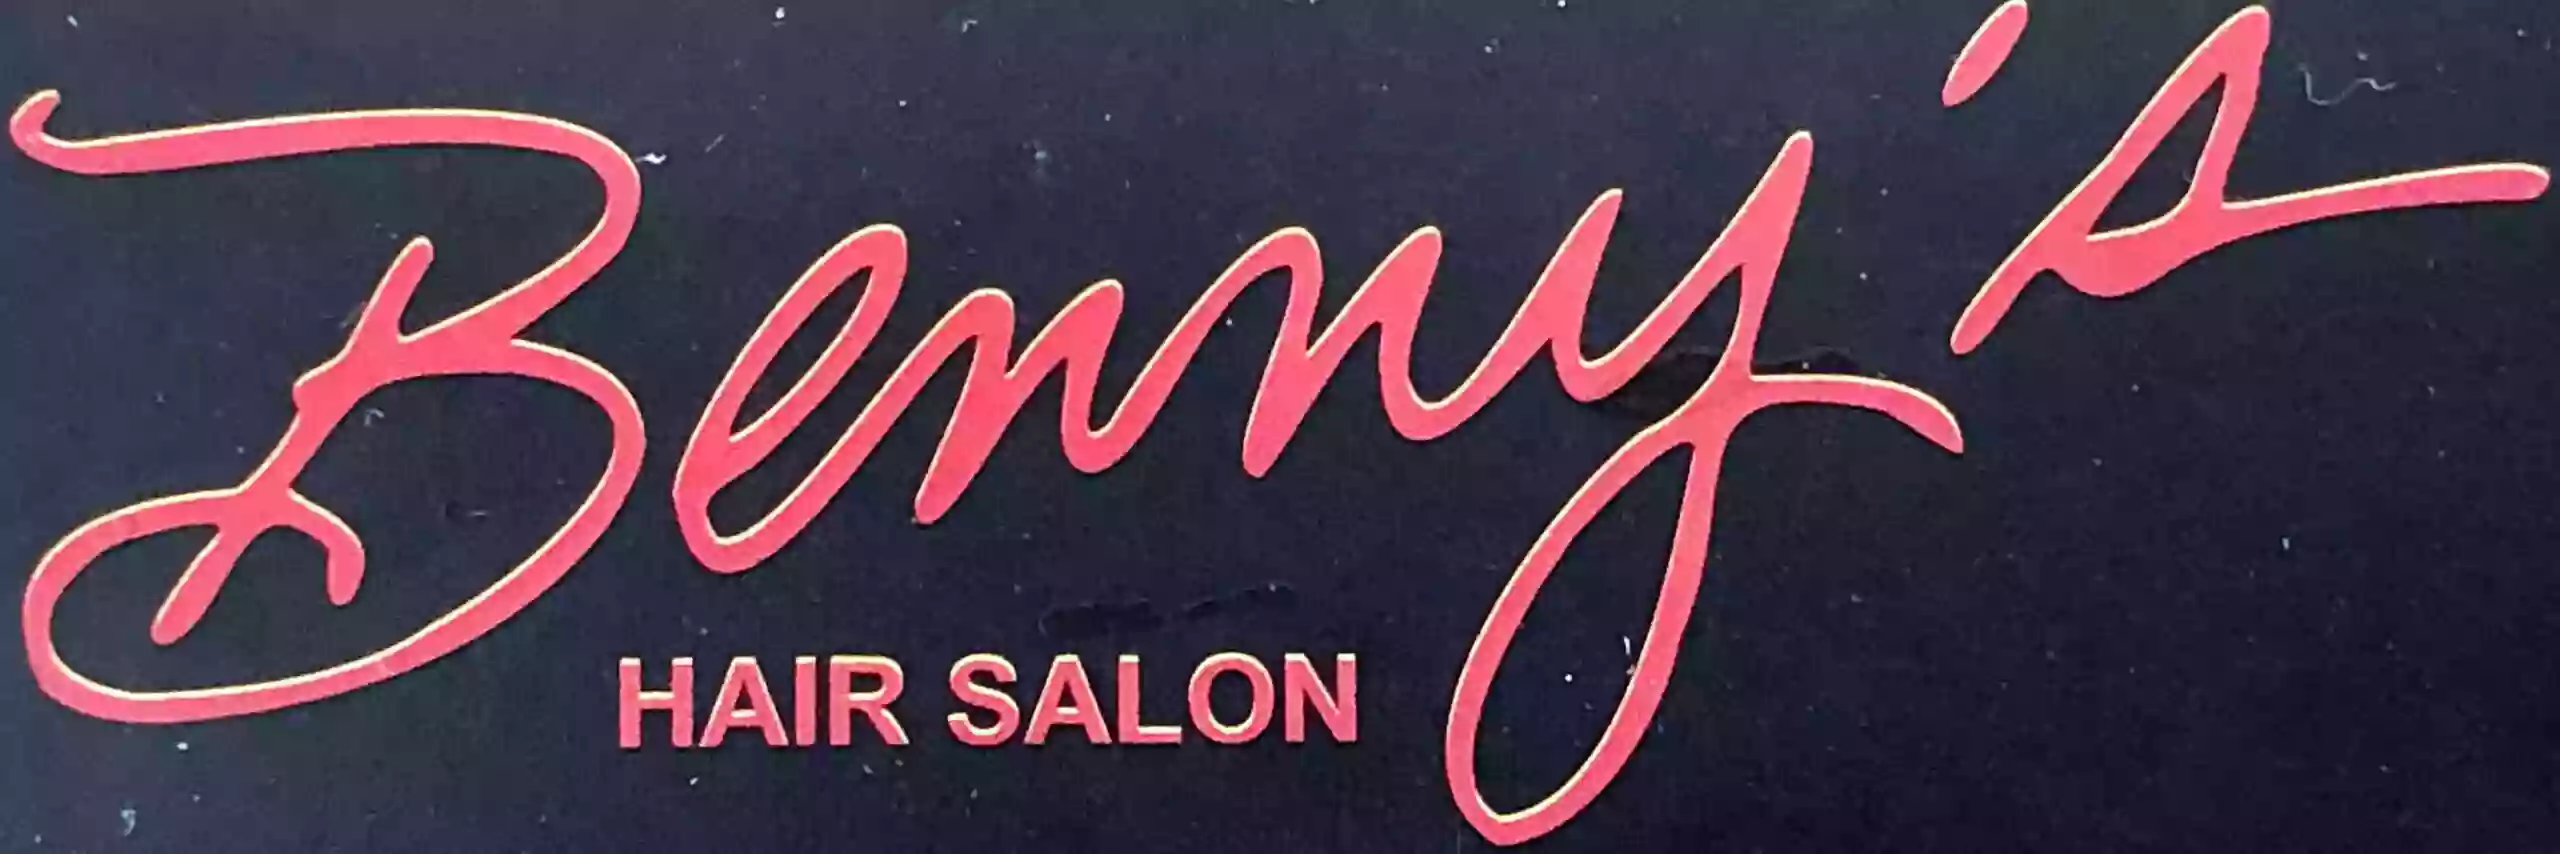 Benny's Hair Salon